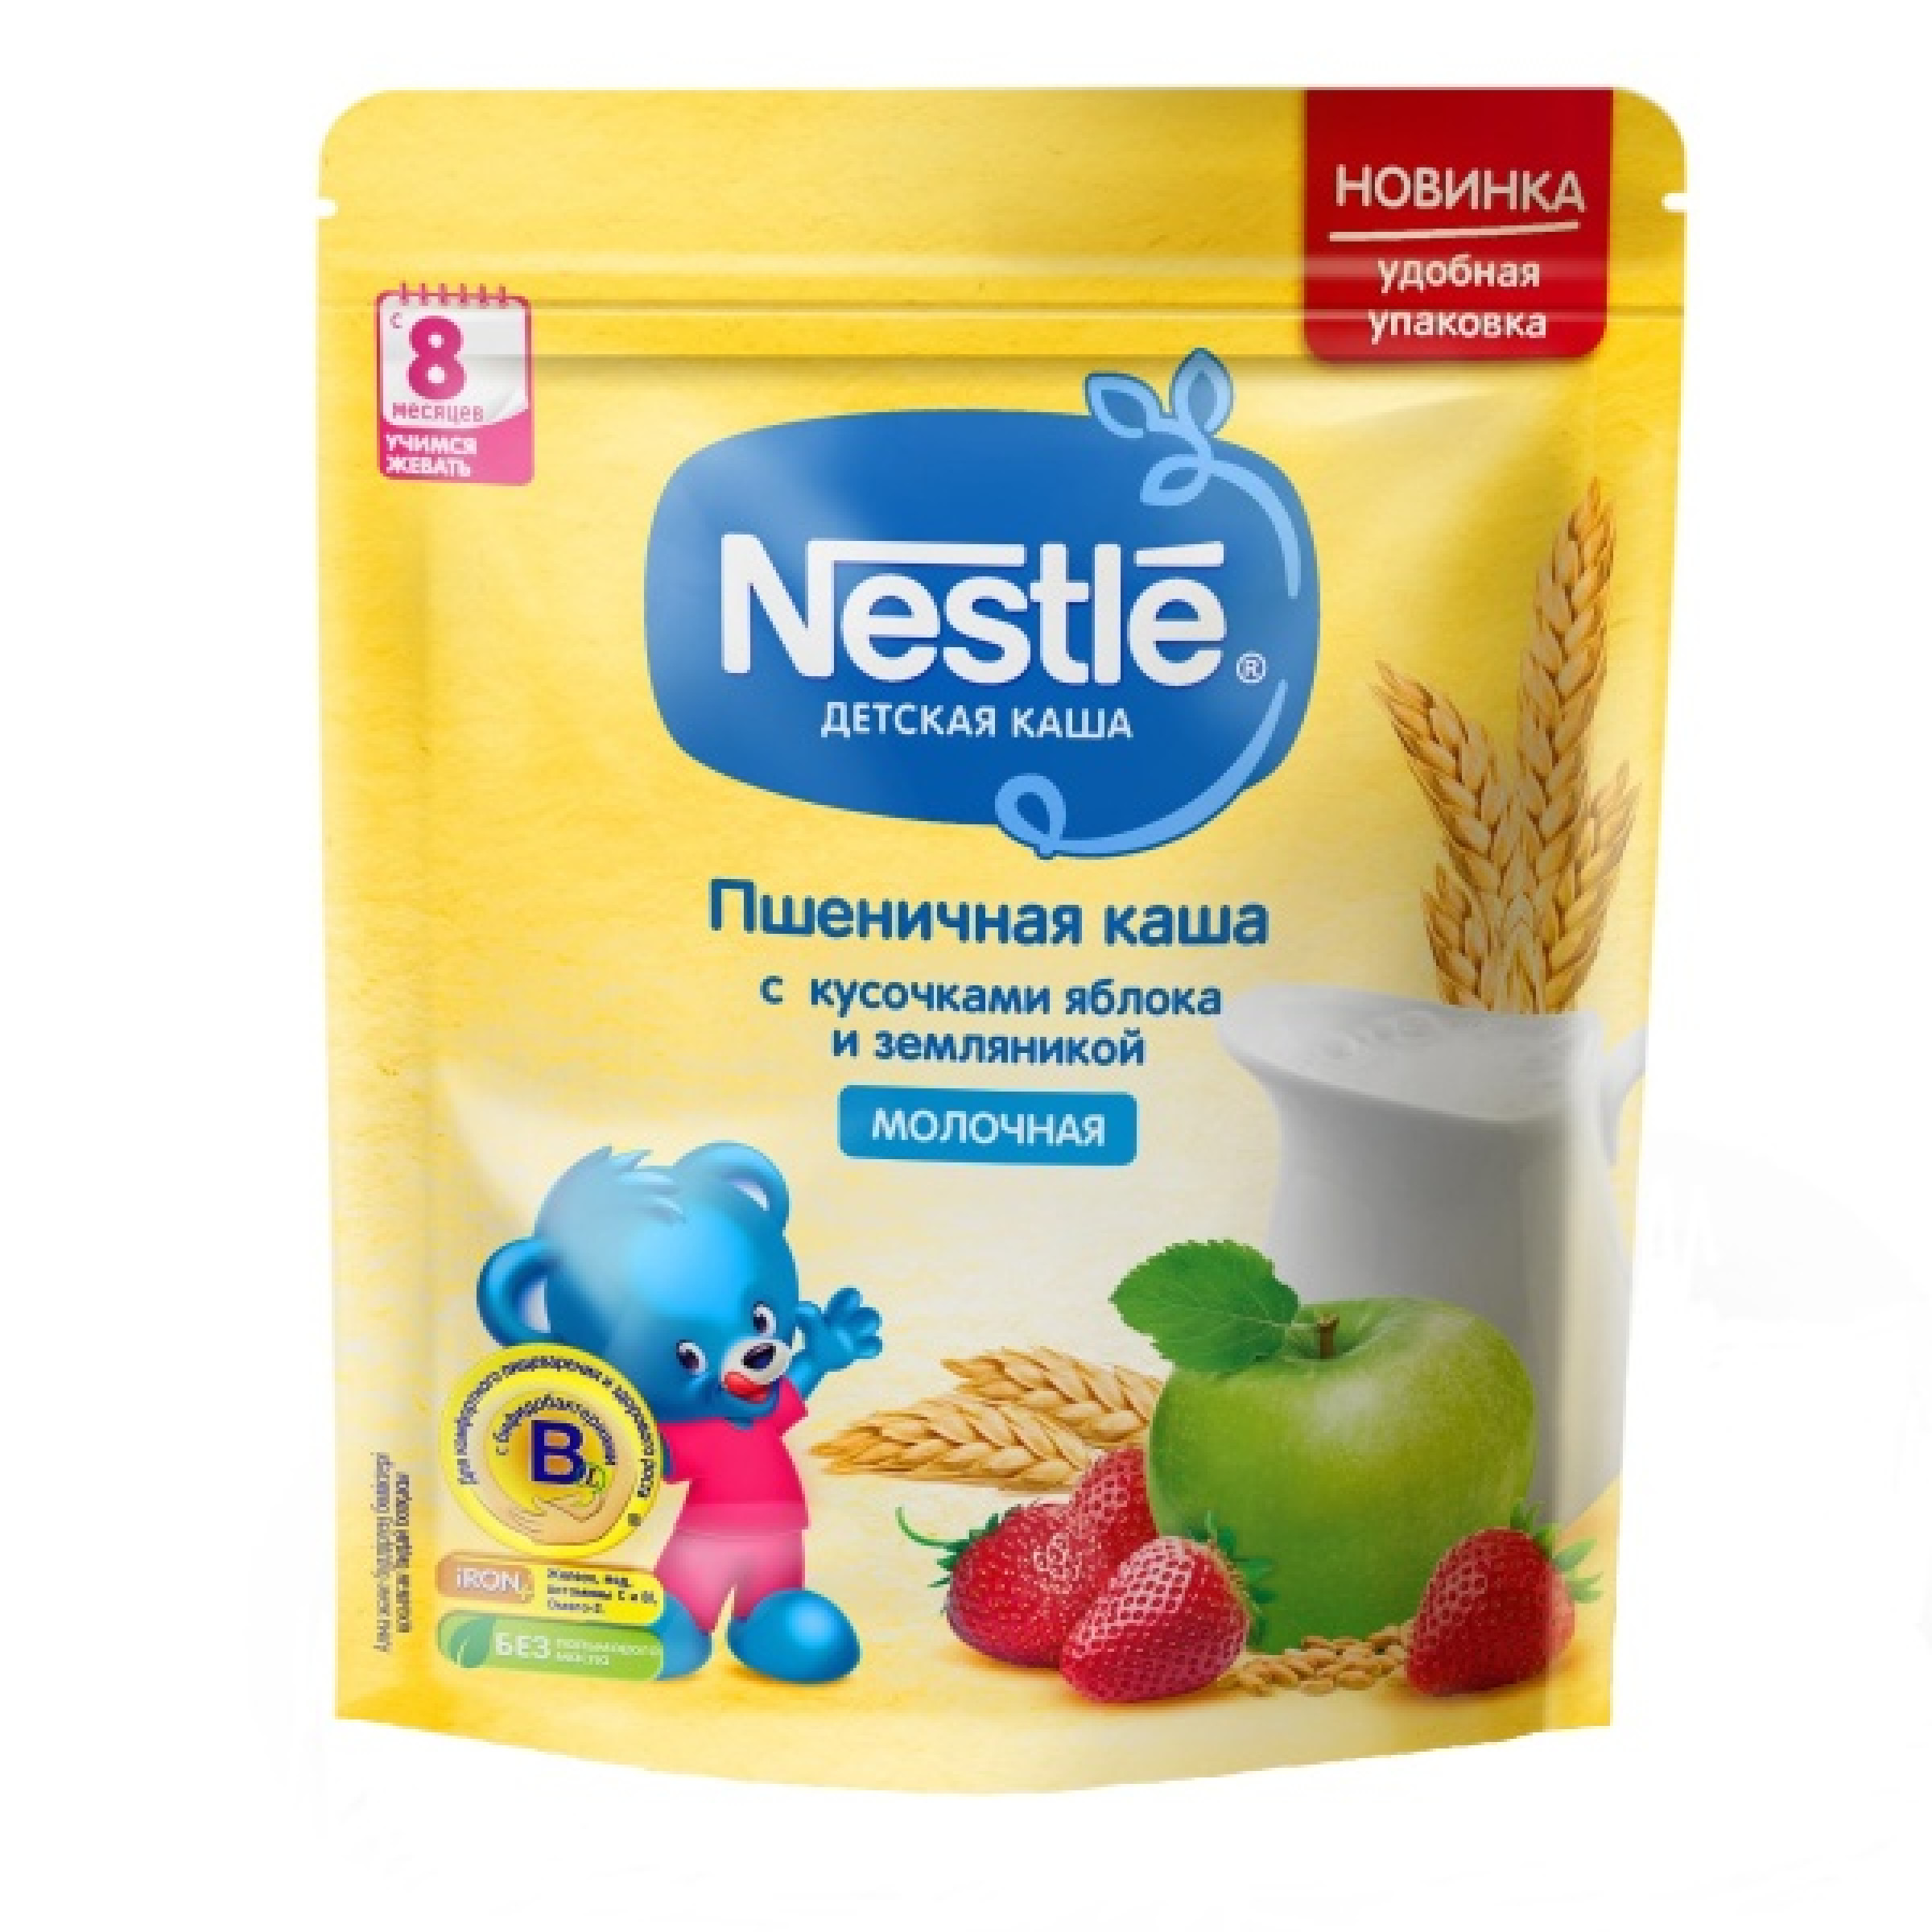 Молочная пшеничная каша Nestle для детей с 8 меcяцев с кусочками яблока и земляникой 220 г